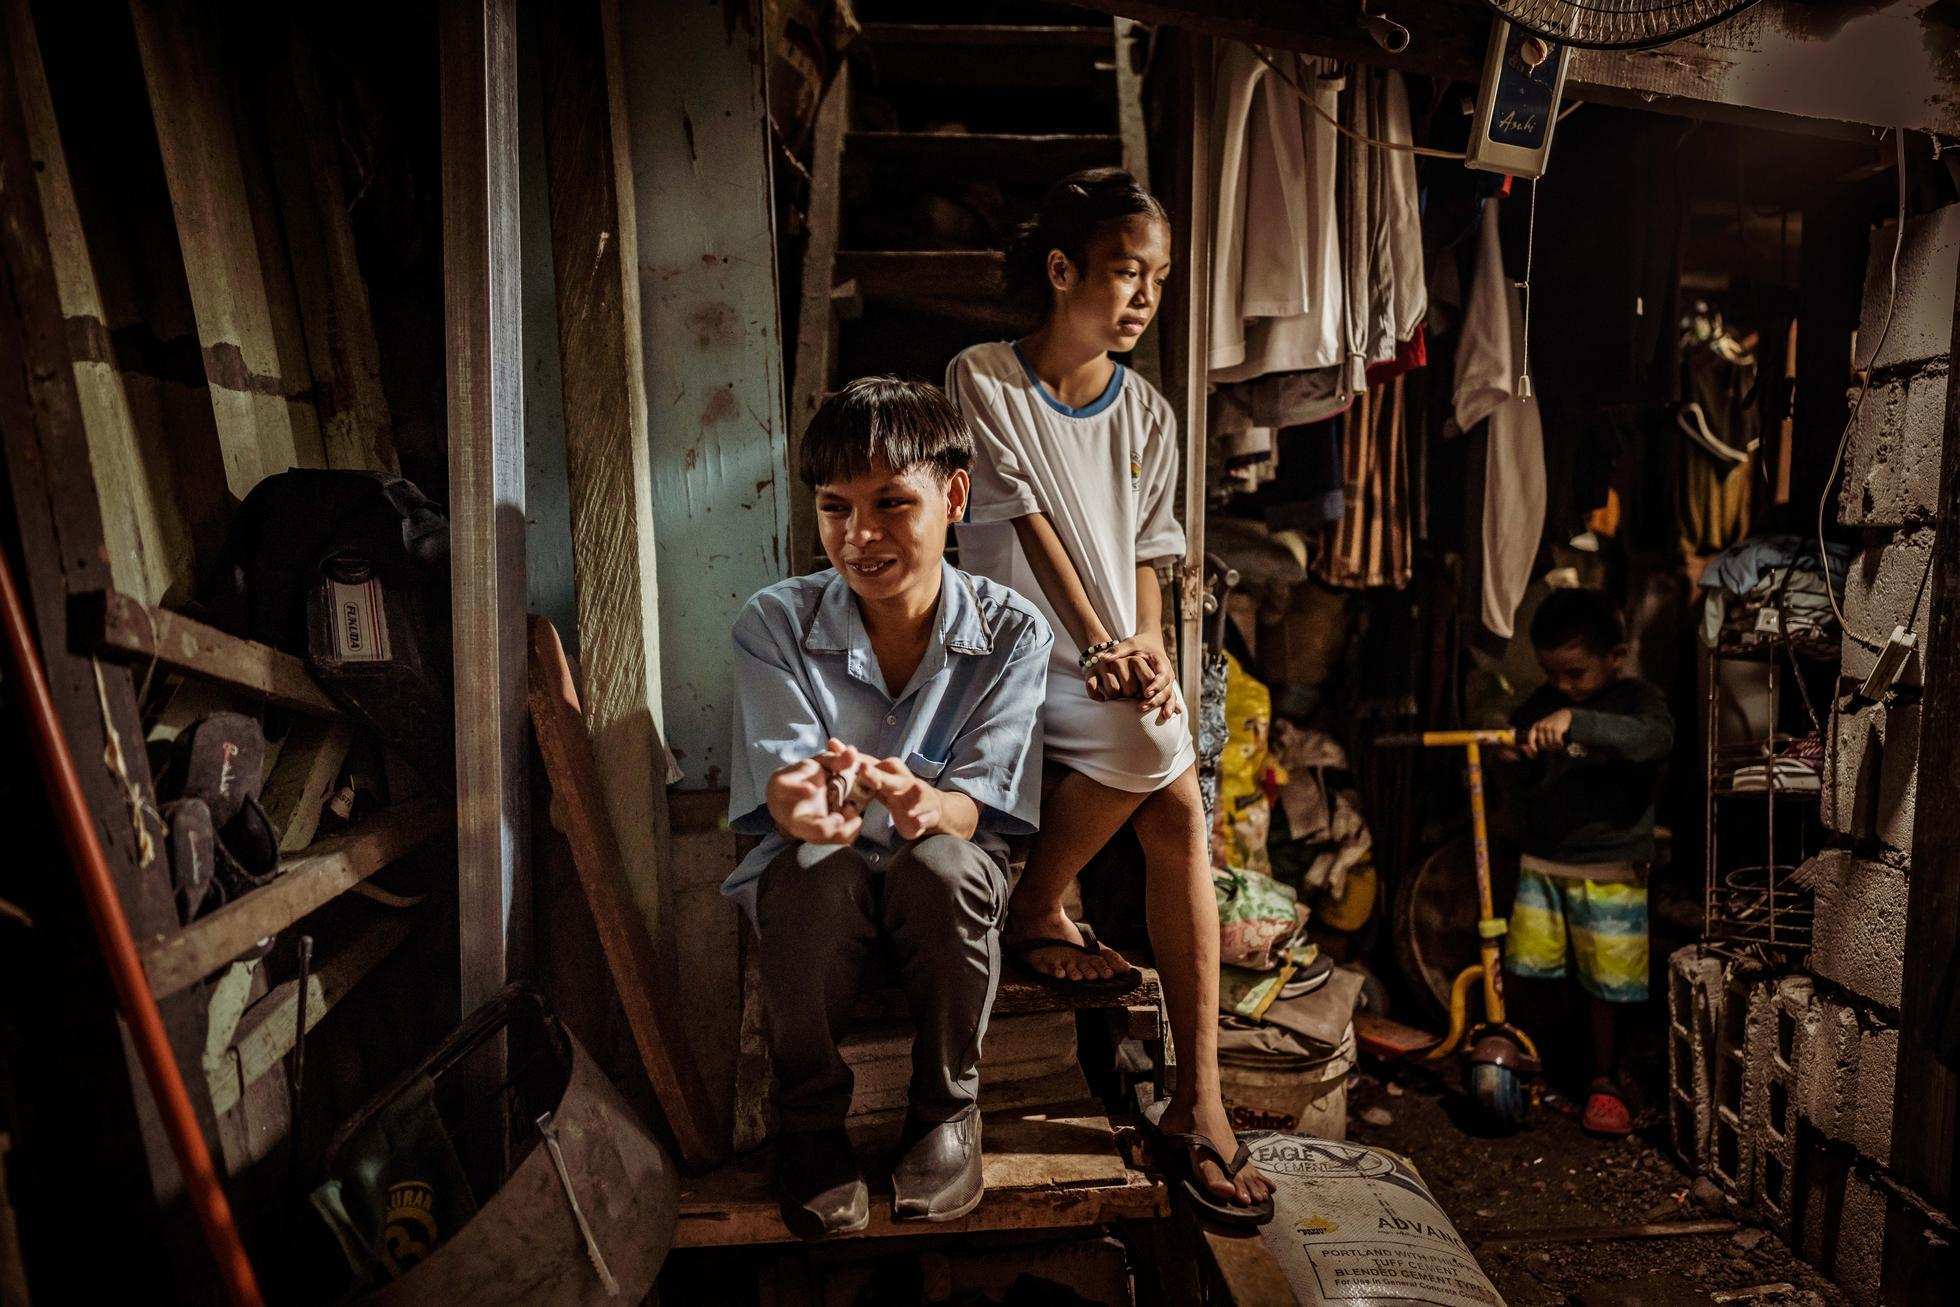 Kinder in ihrer vollgestellten Behausung in Manilas Slums (Foto: Jakob Studnar)